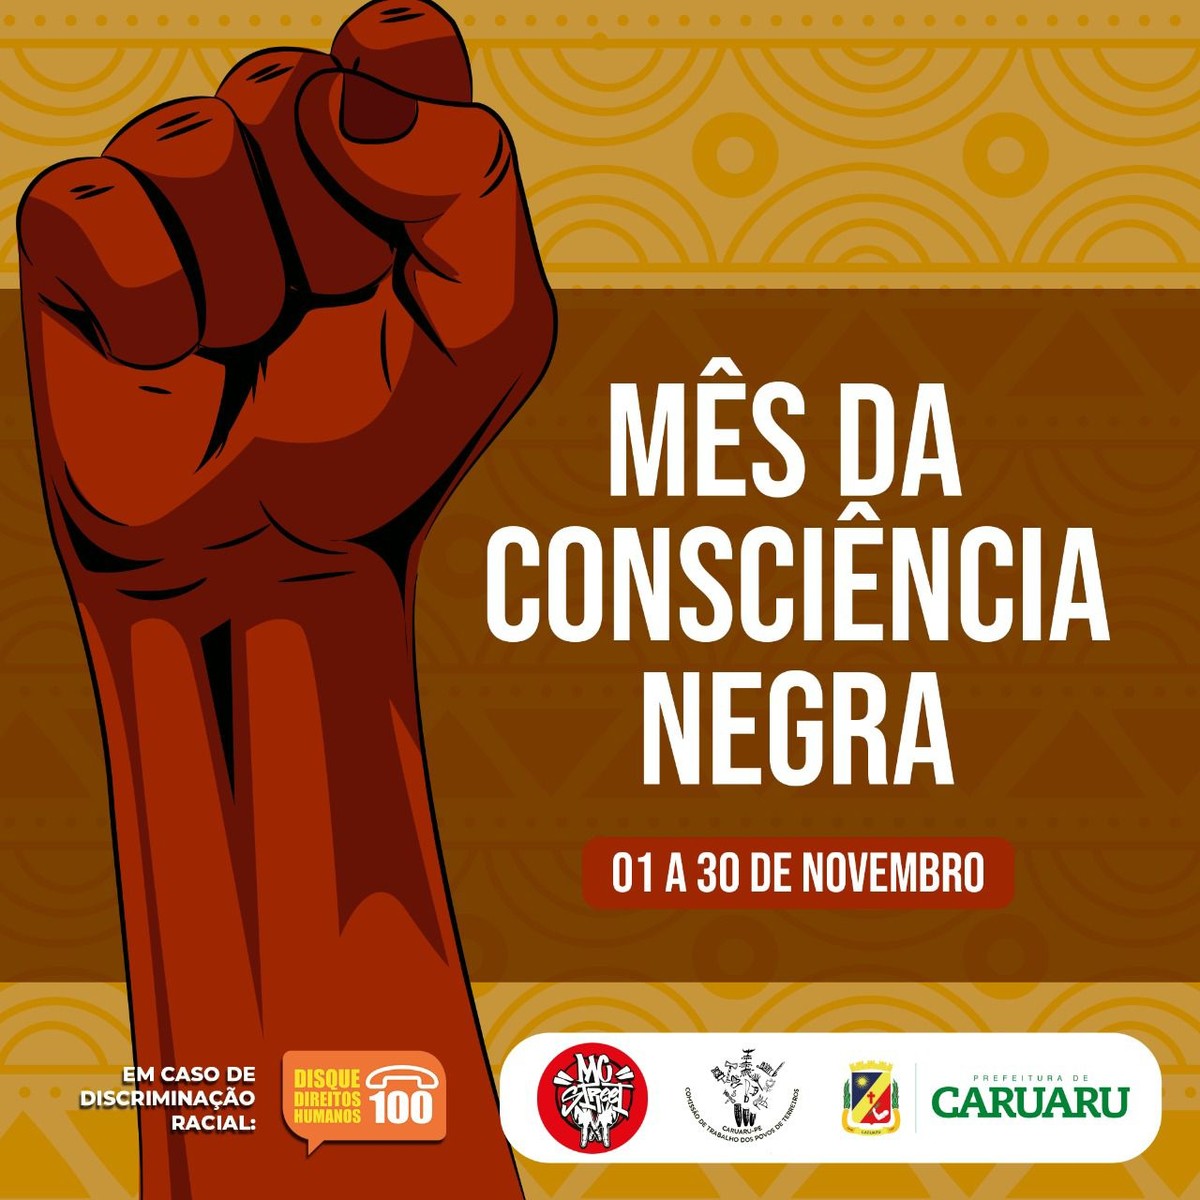 Prefeitura de Caruaru dá início à programação do Mês da Consciência Negra  nesta terça-feira (1º) | Caruaru e Região | G1